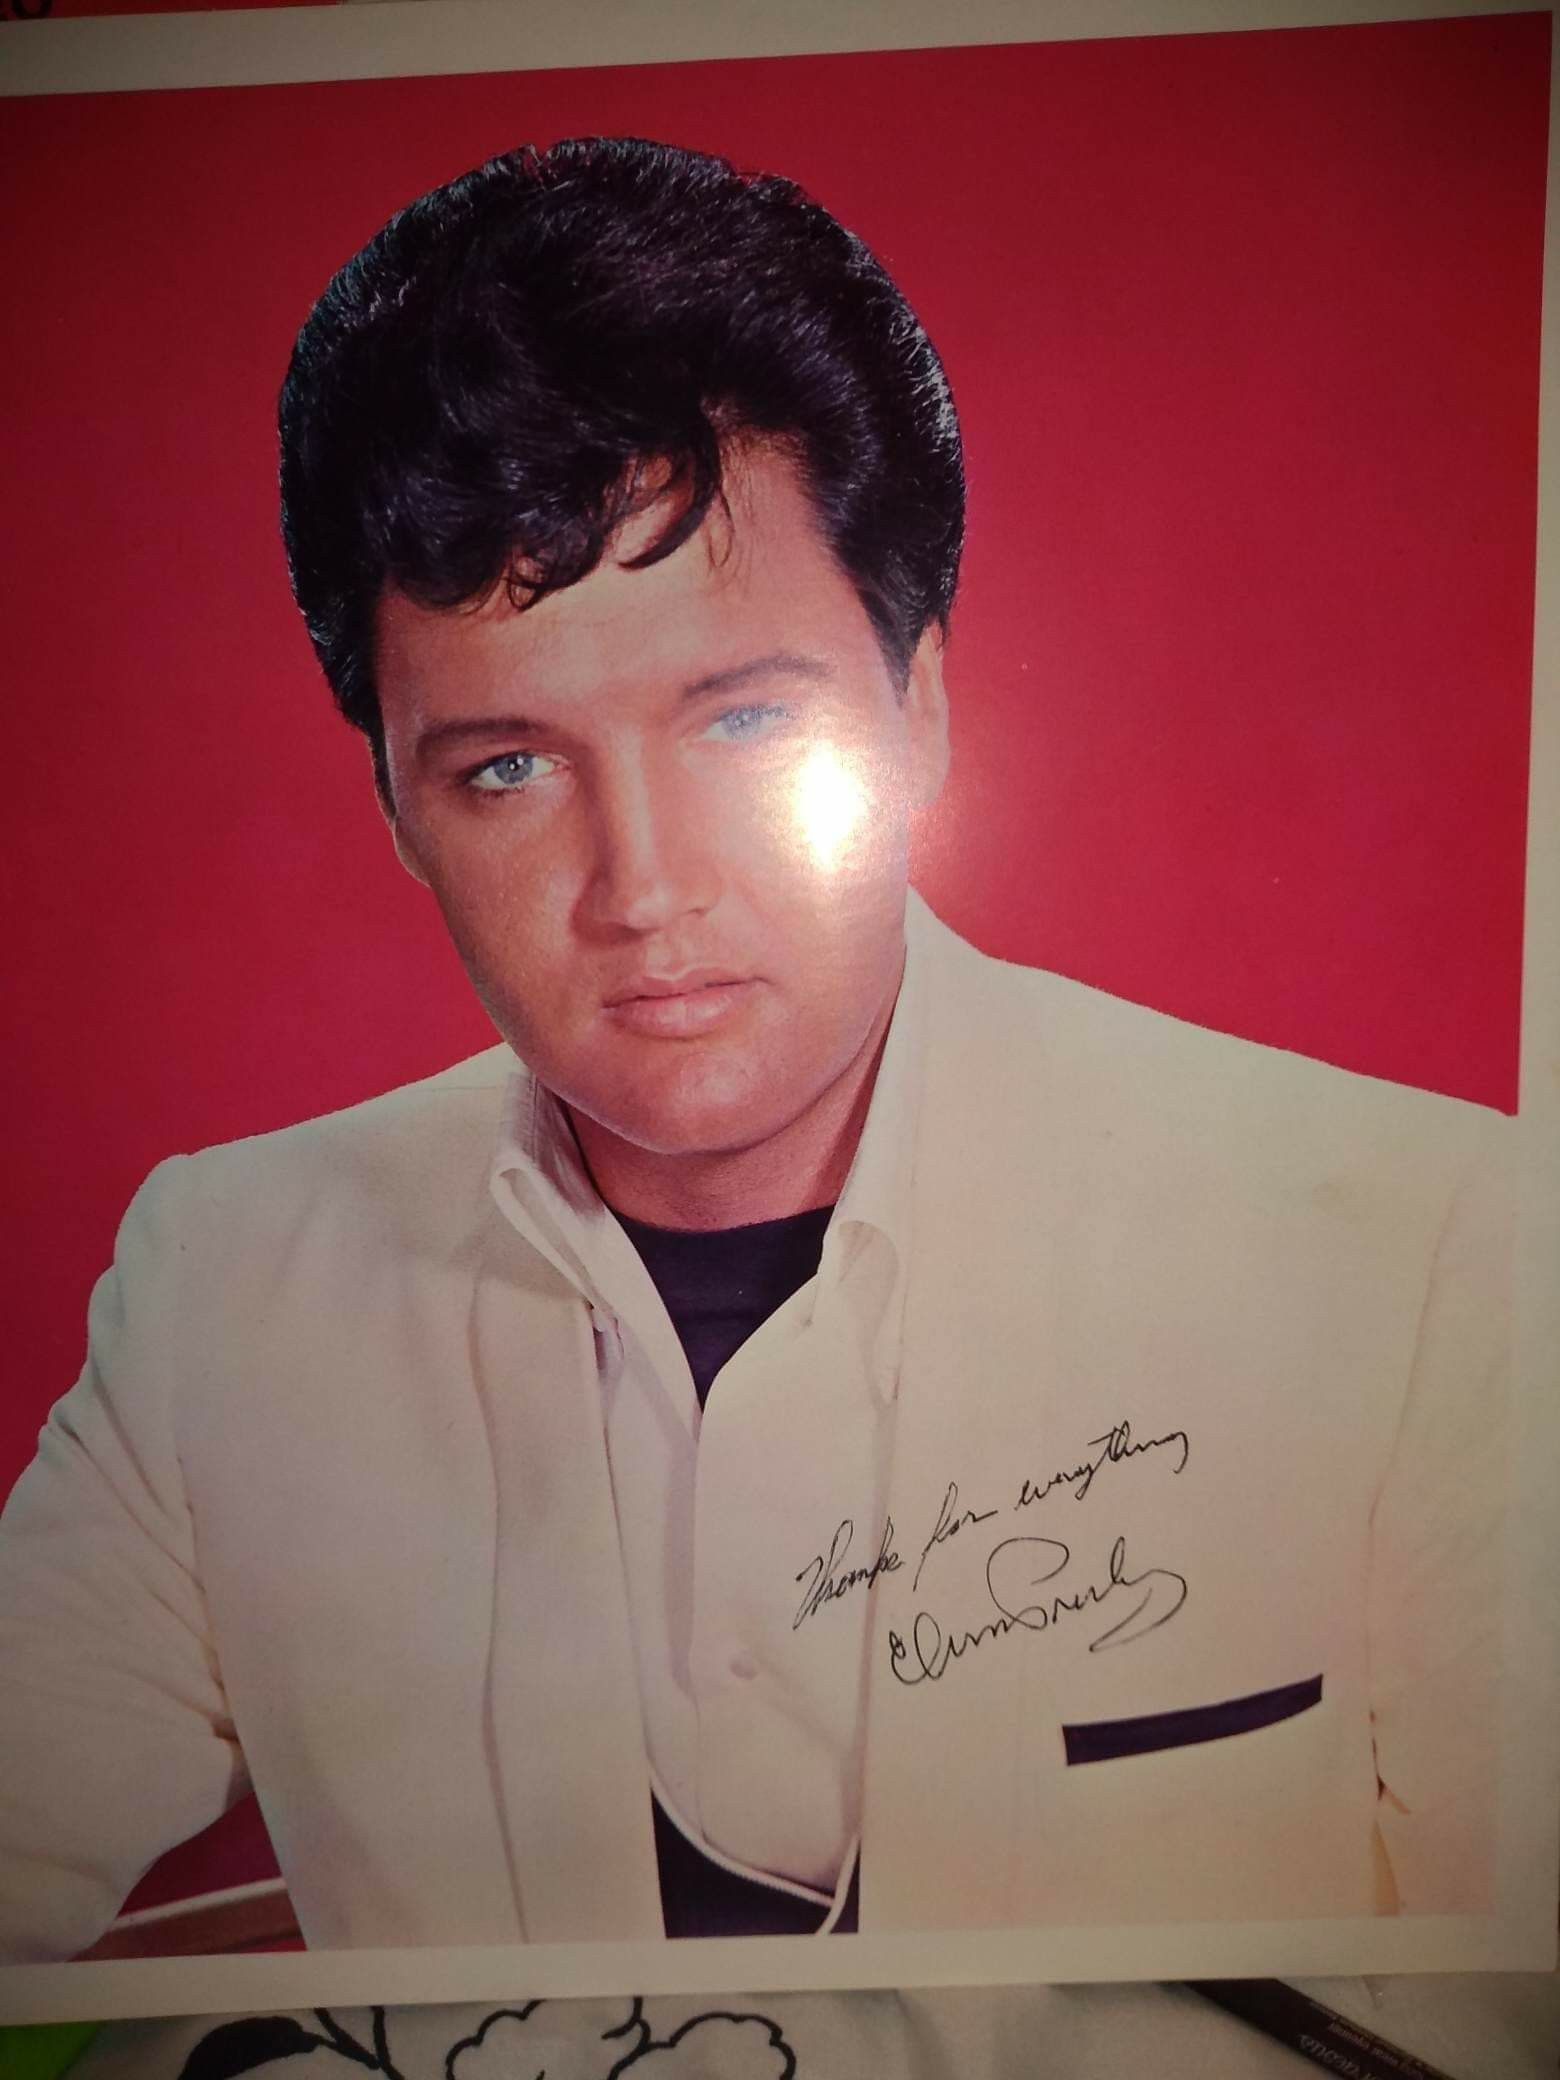 Elvis record